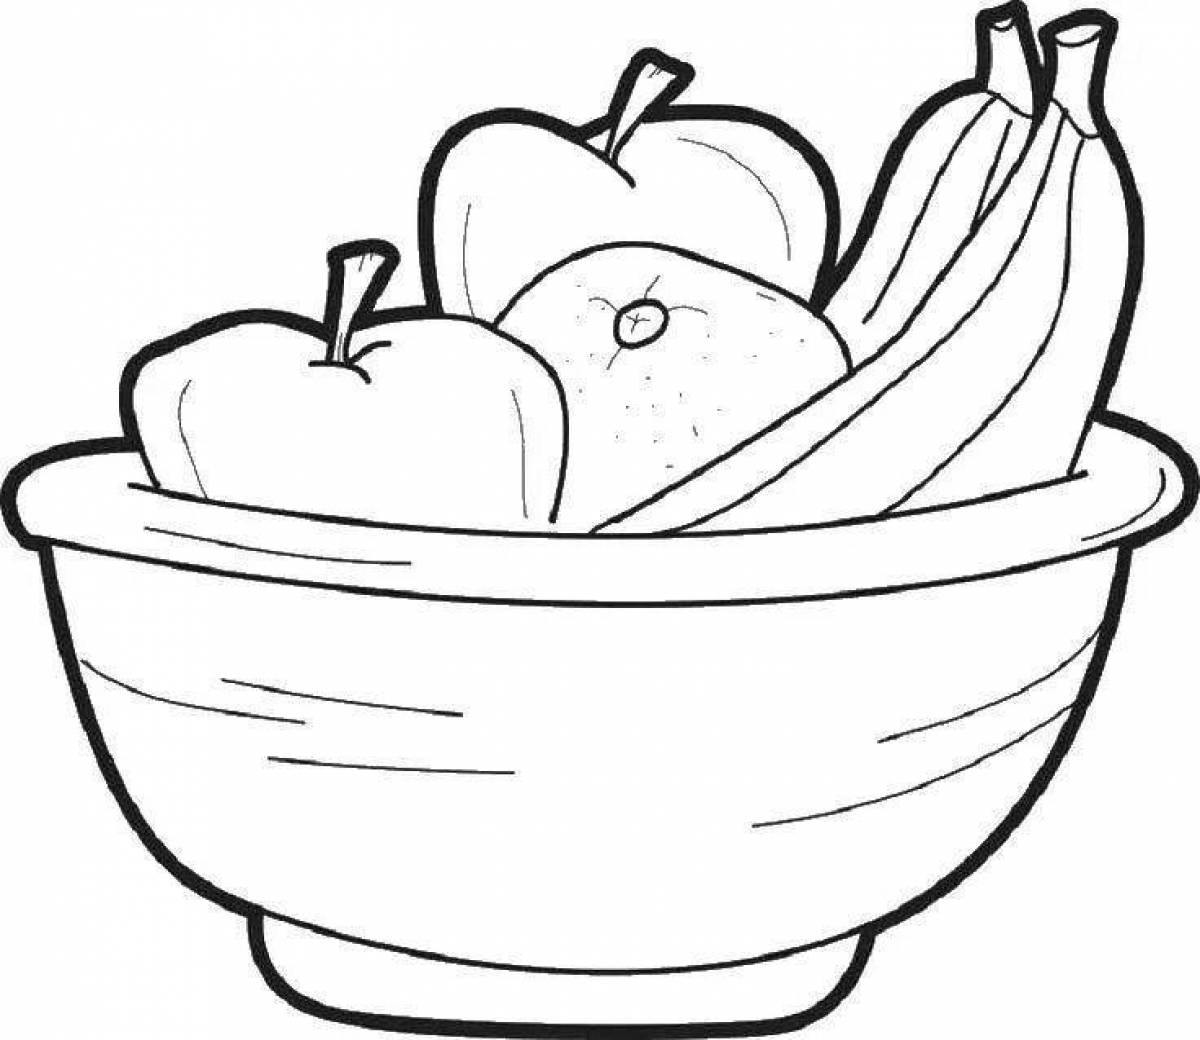 Fruit bowl #10